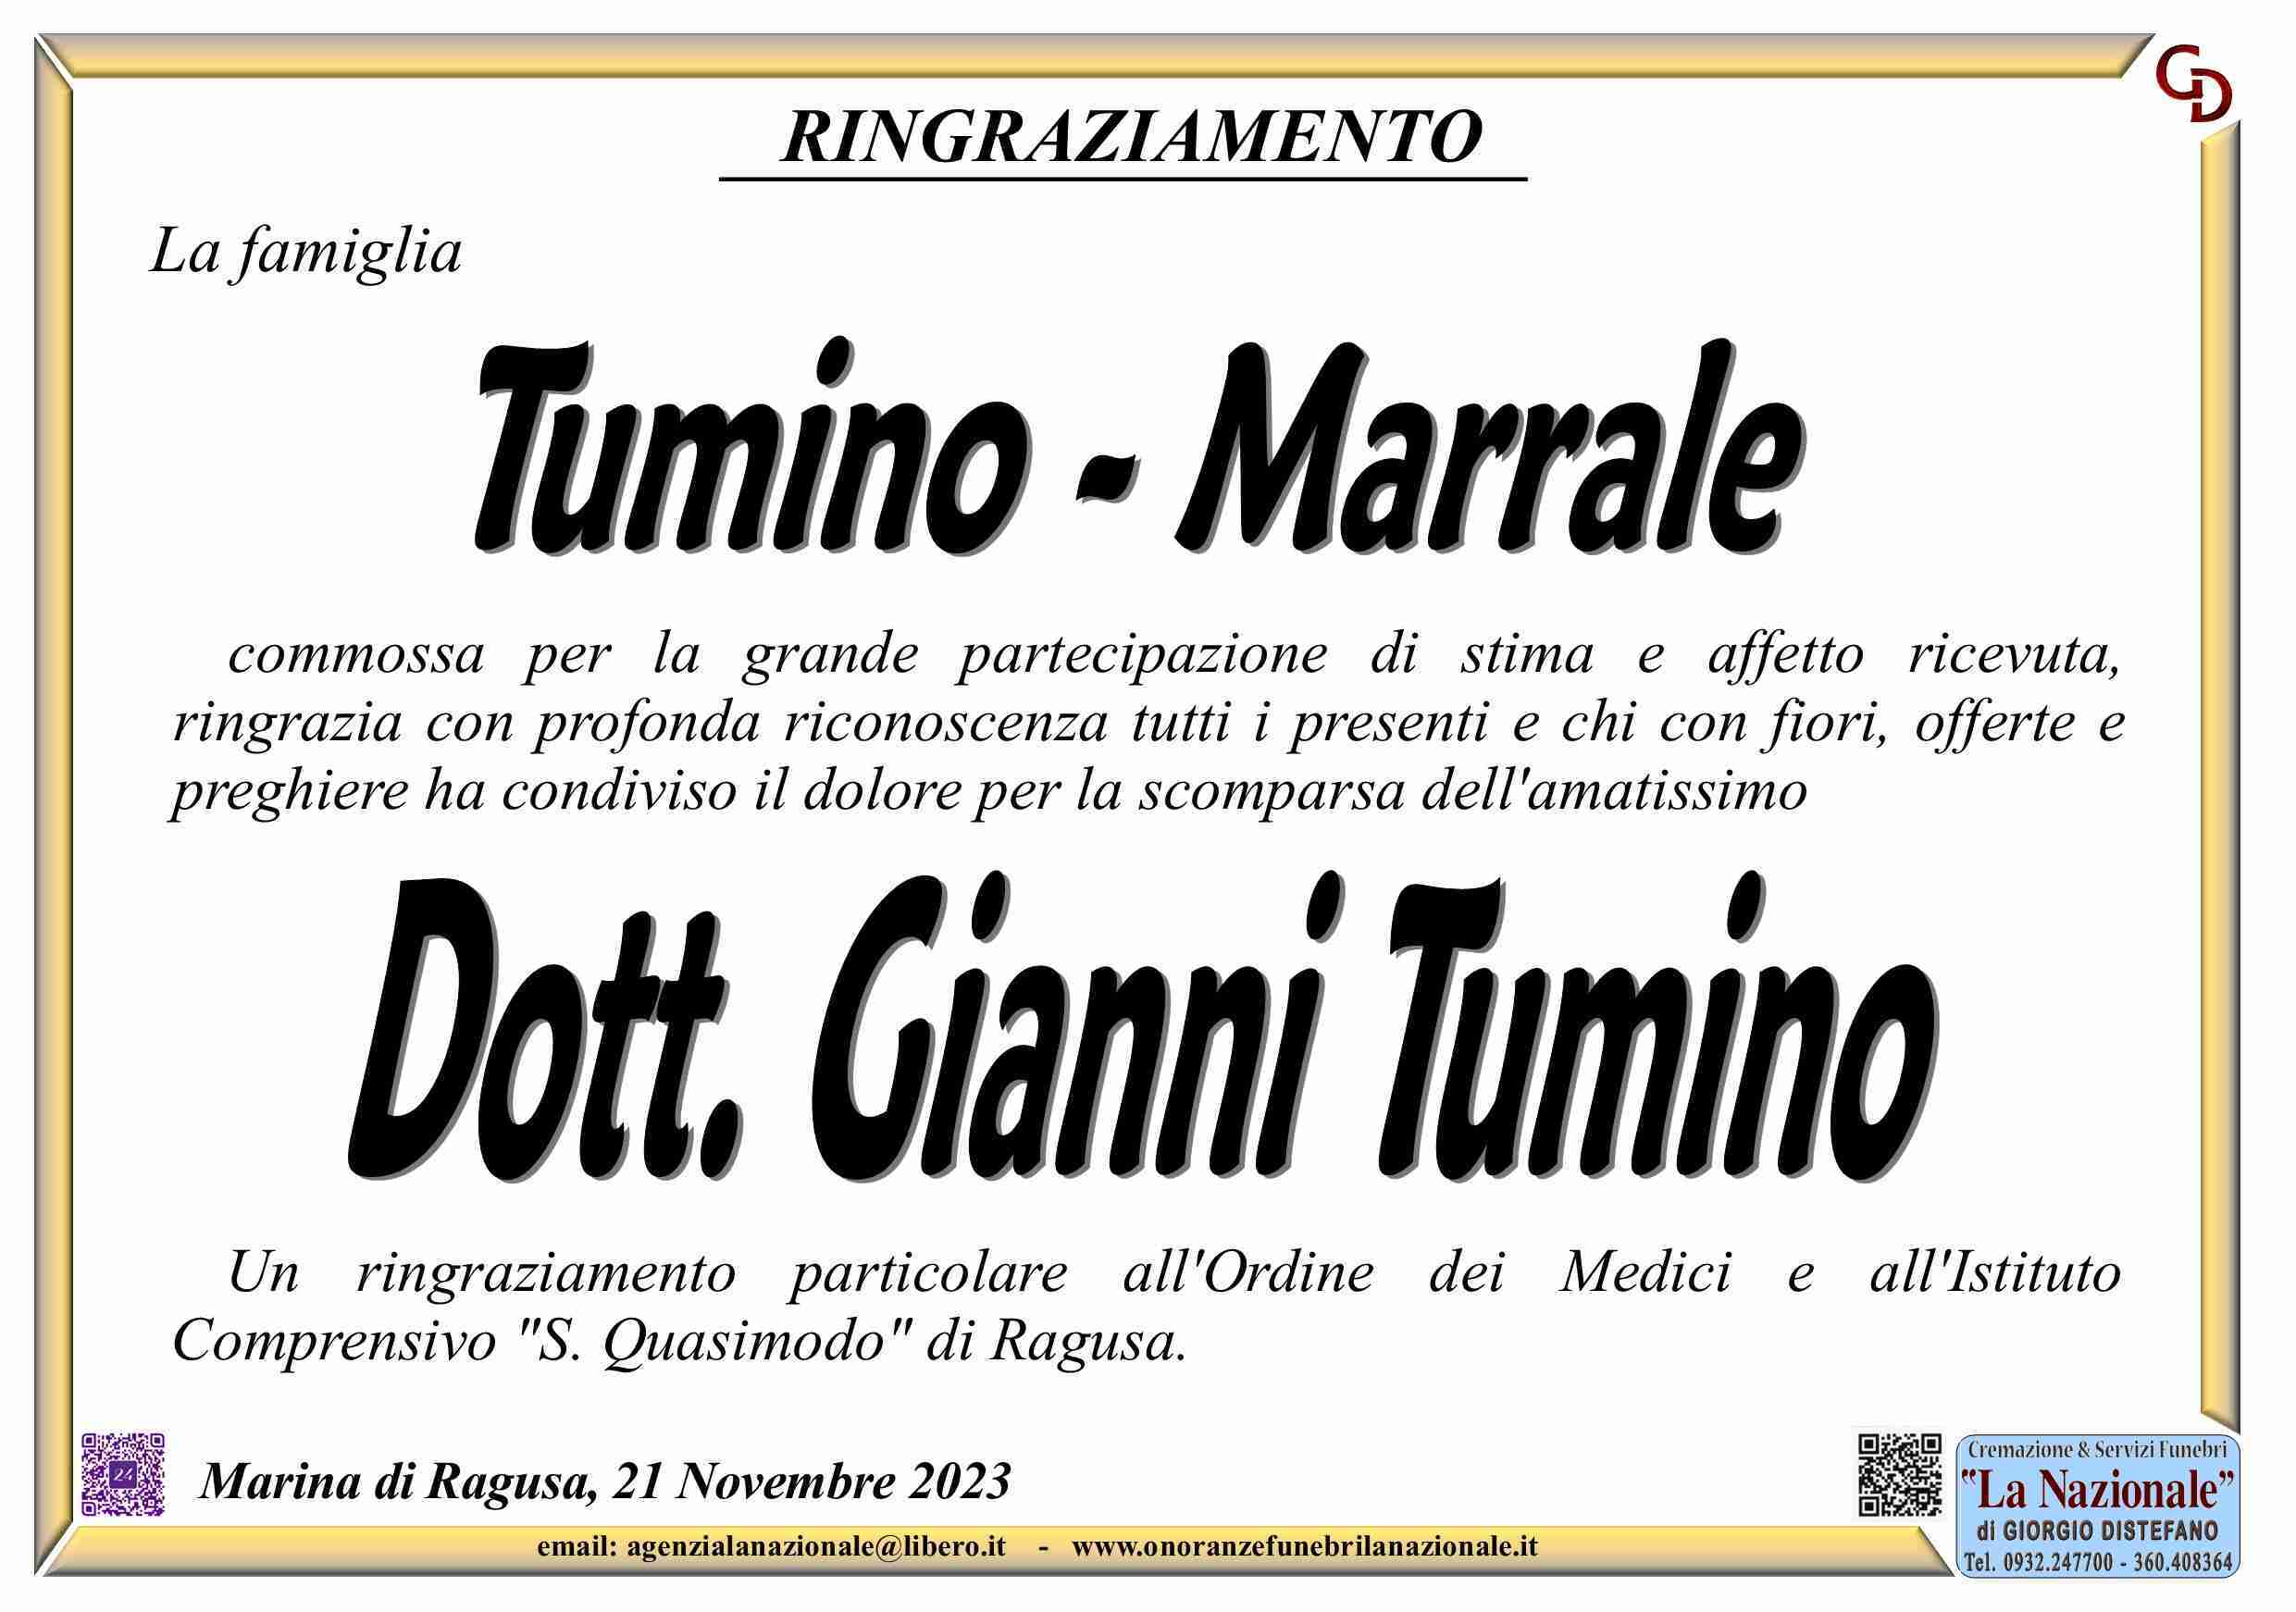 Gianni Tumino